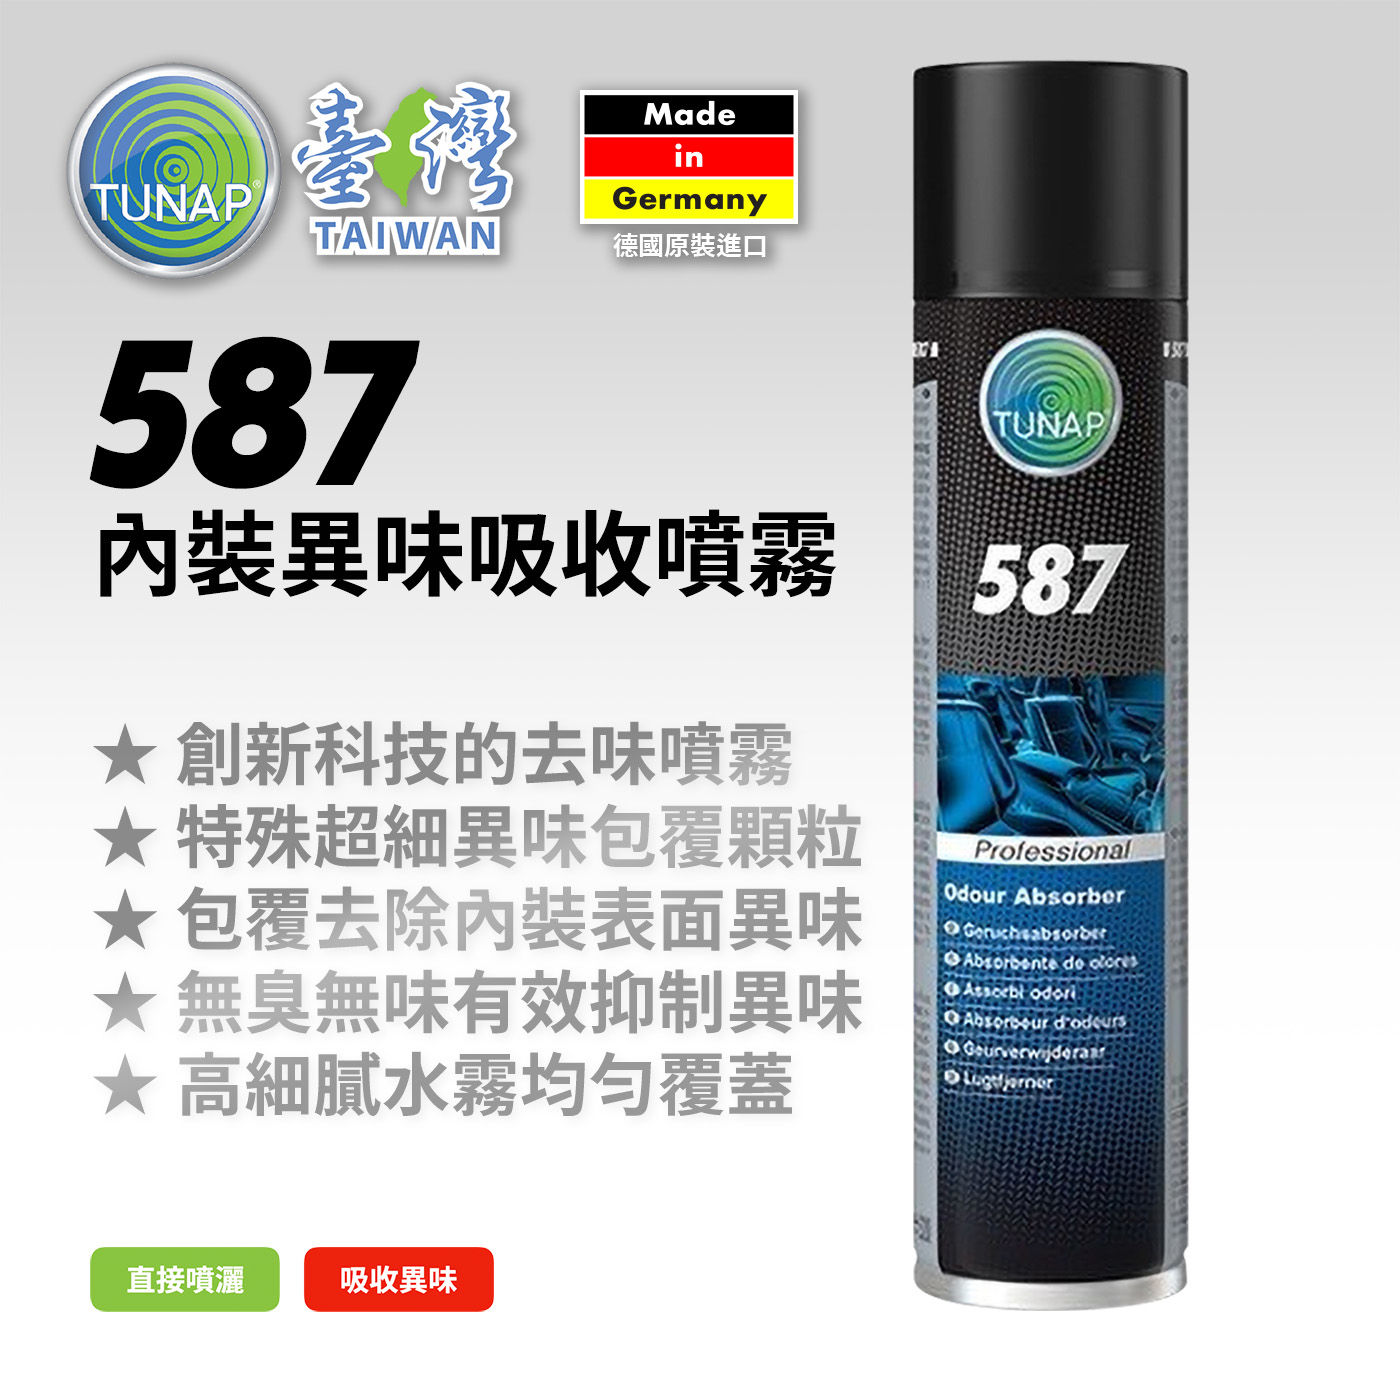 Tunap 587 內裝異味吸收噴霧 300毫升 X 2入二合一的空氣與織物恢復劑， 可微清潔內裝表面